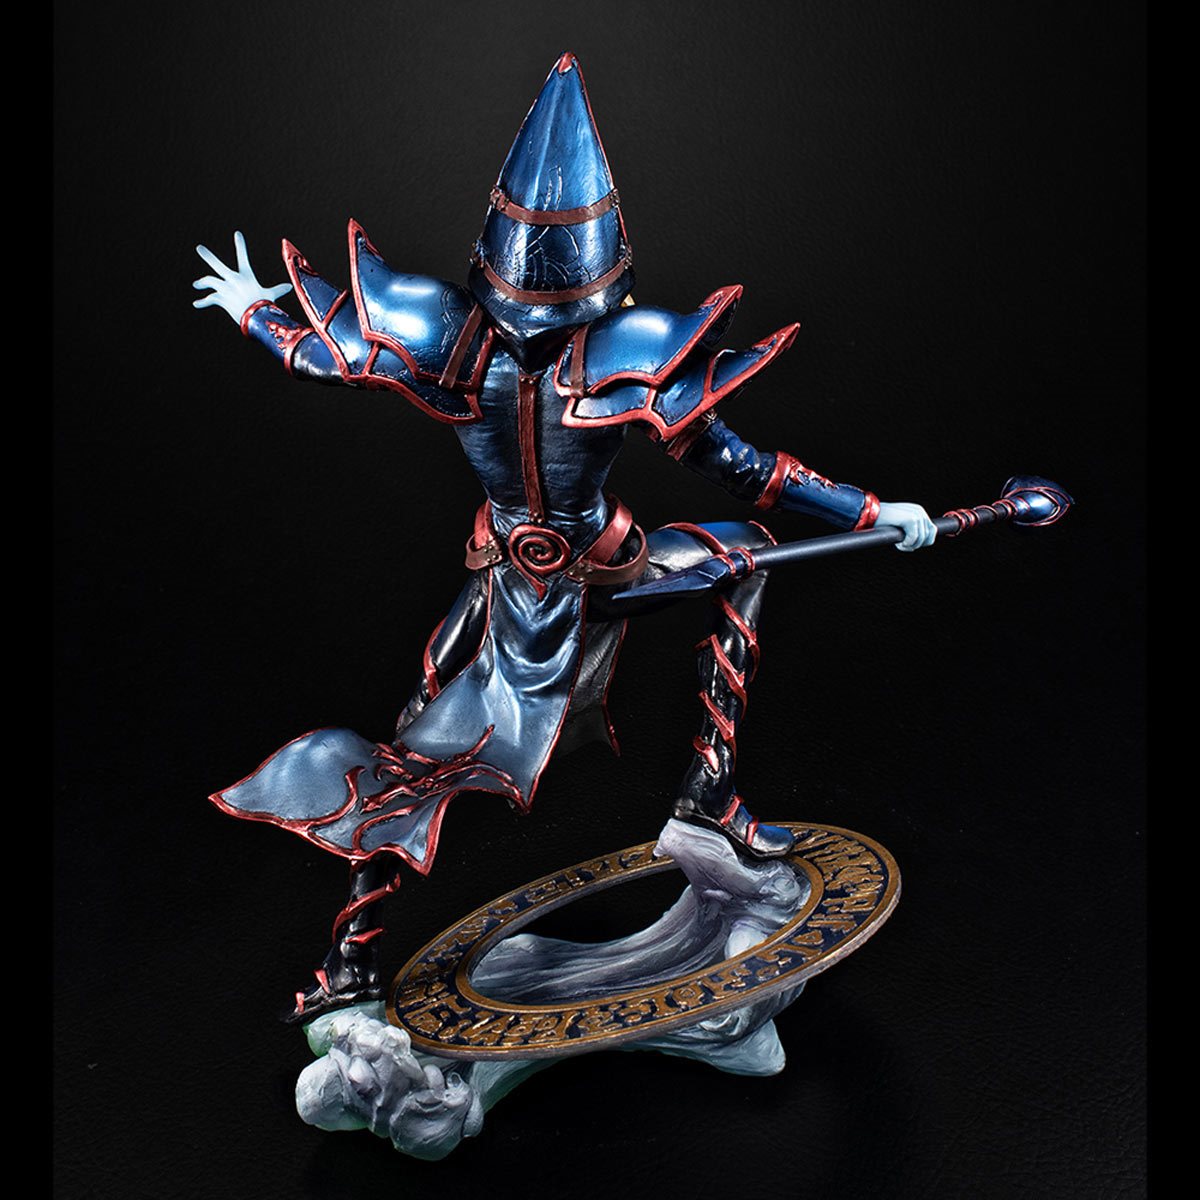 Yu-Gi-Oh! – Dark Magician PVC Statue Pre-Order FAQs